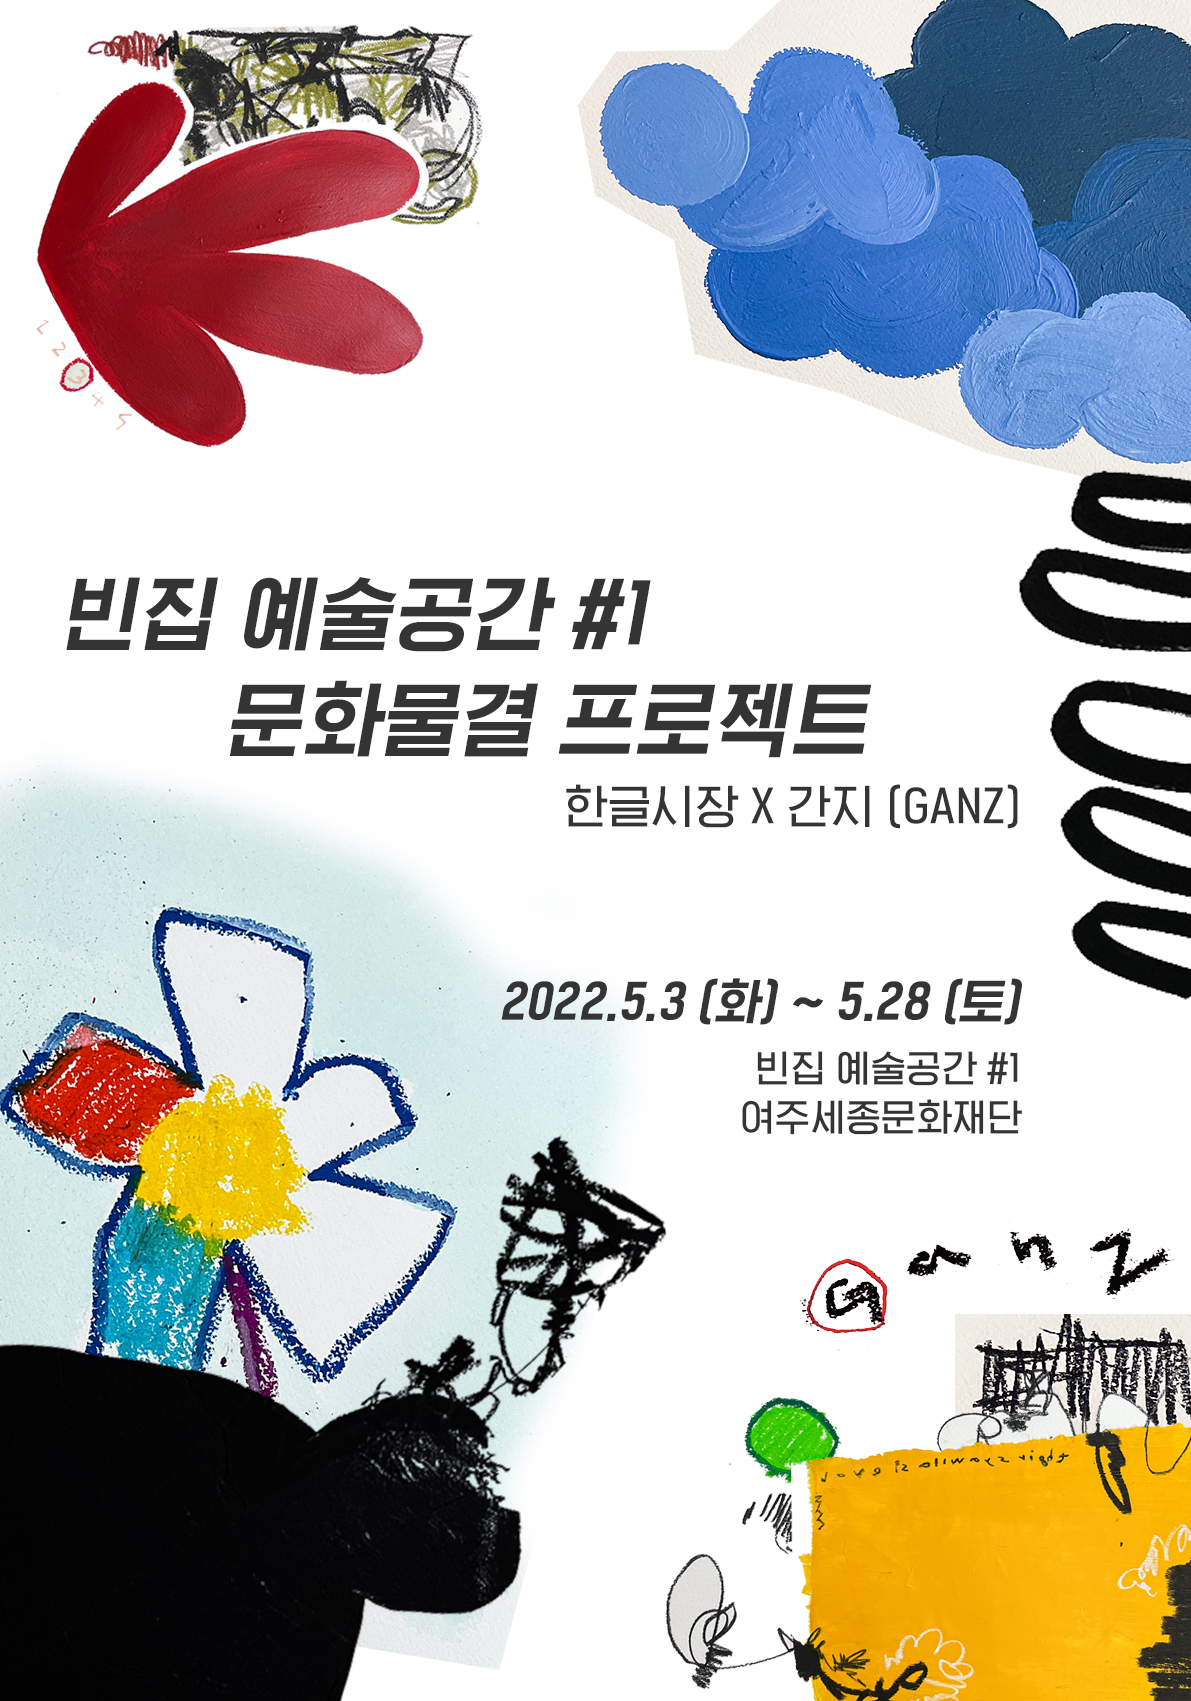 빈집 예술공간#1 문화물결 프로젝트 <한글시장X간지(GANZ)> 포스터